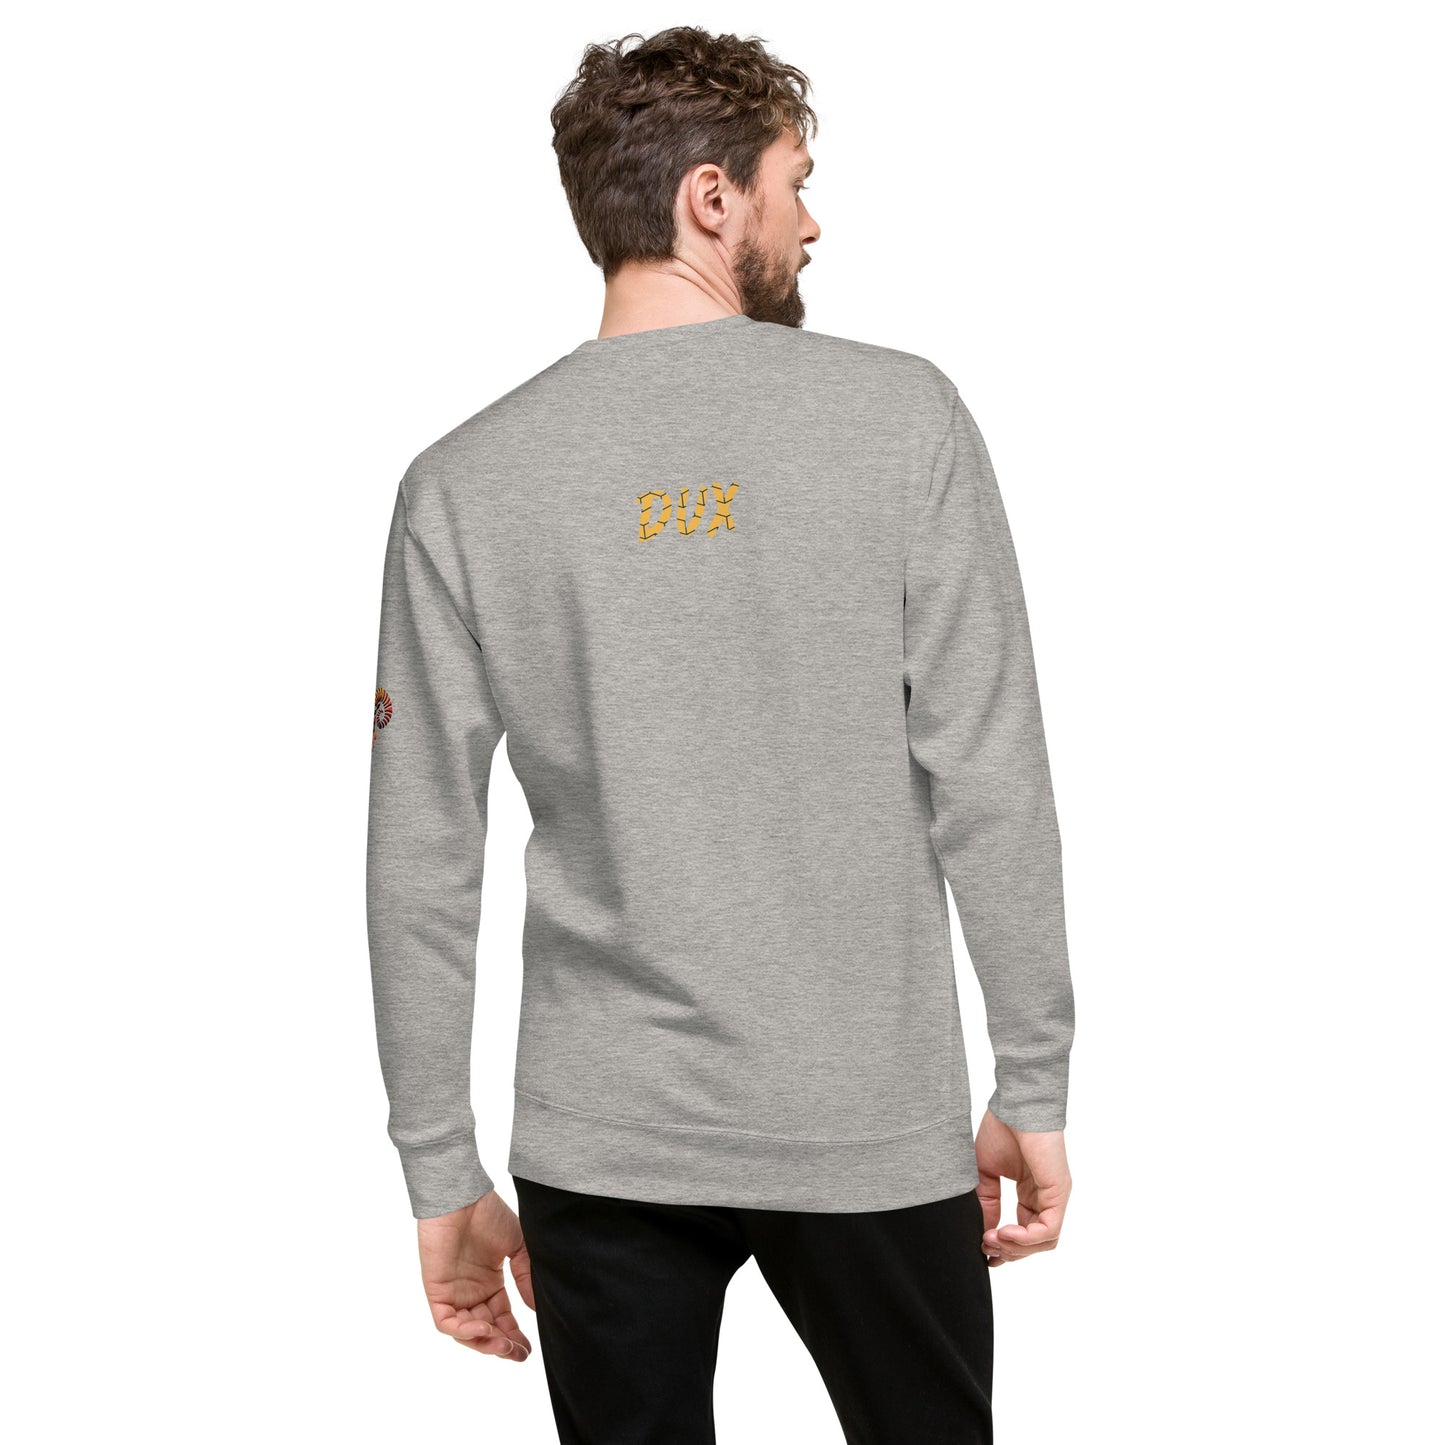 Dux Unisex Premium Sweatshirt